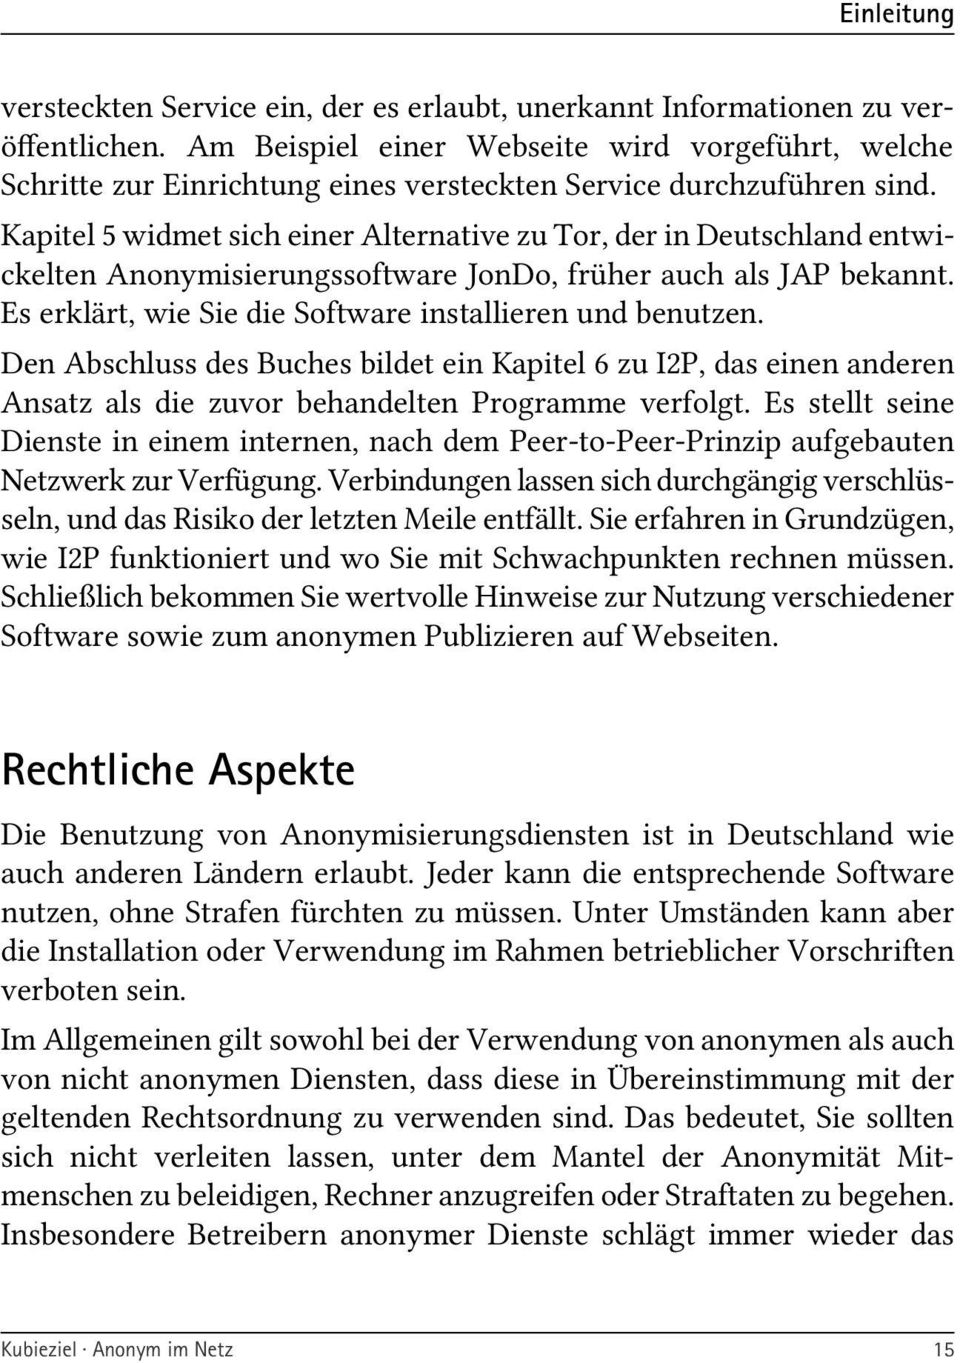 Kapitel 5 widmet sich einer Alternative zu Tor, der in Deutschland entwickelten Anonymisierungssoftware JonDo, früher auch als JAP bekannt. Es erklärt, wie Sie die Software installieren und benutzen.